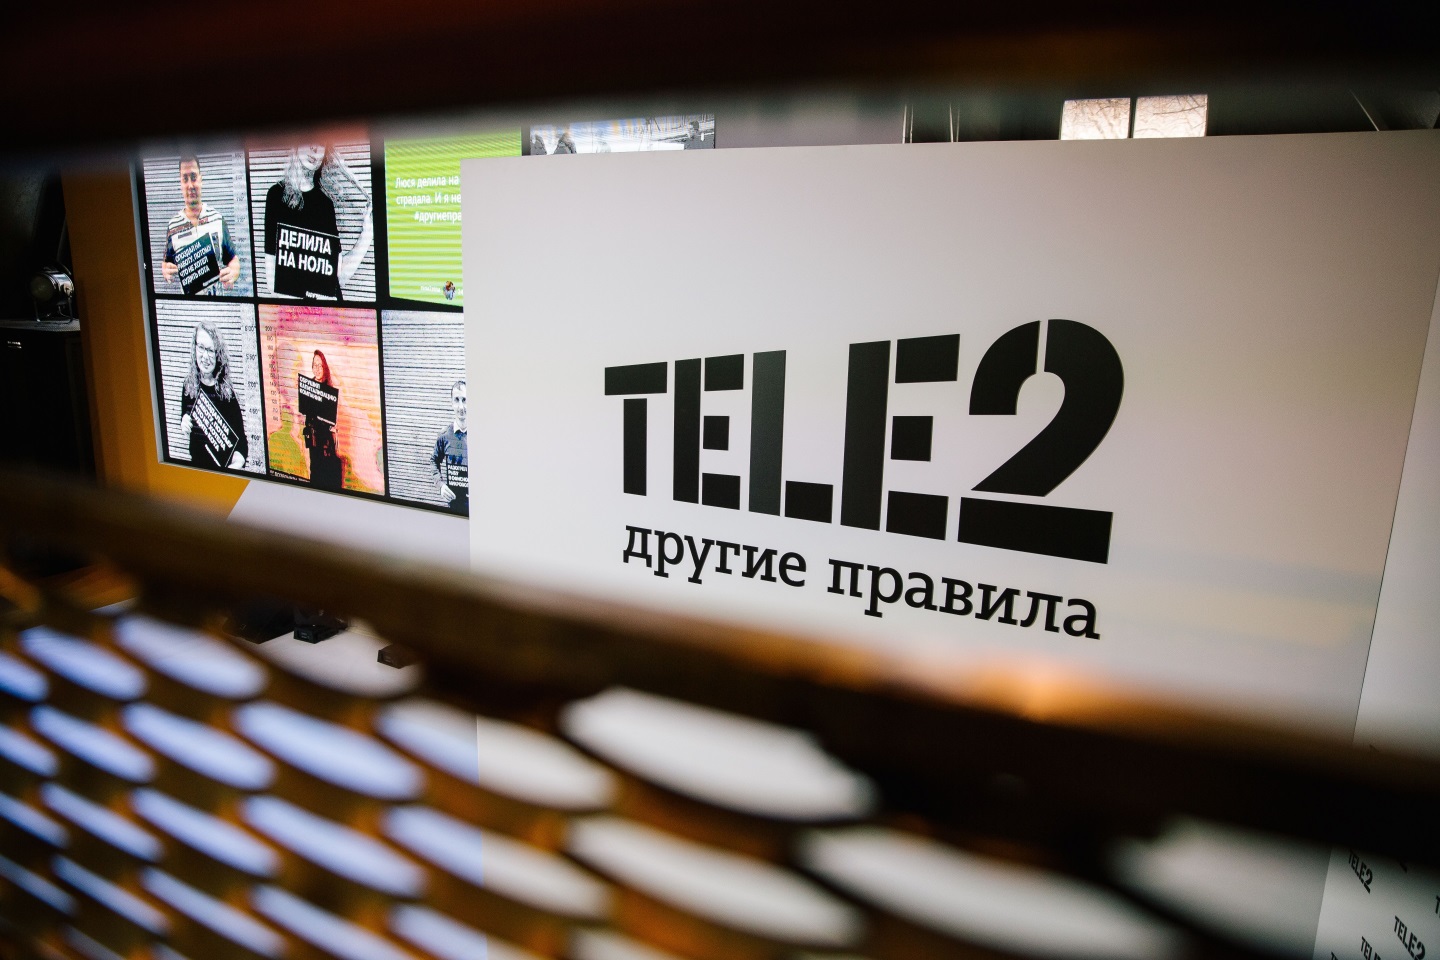 Tele2 ребрендинг. Tele2 логотип. Теле2 другие правила логотип. Теле2 фон. Теле2 ребрендинг.